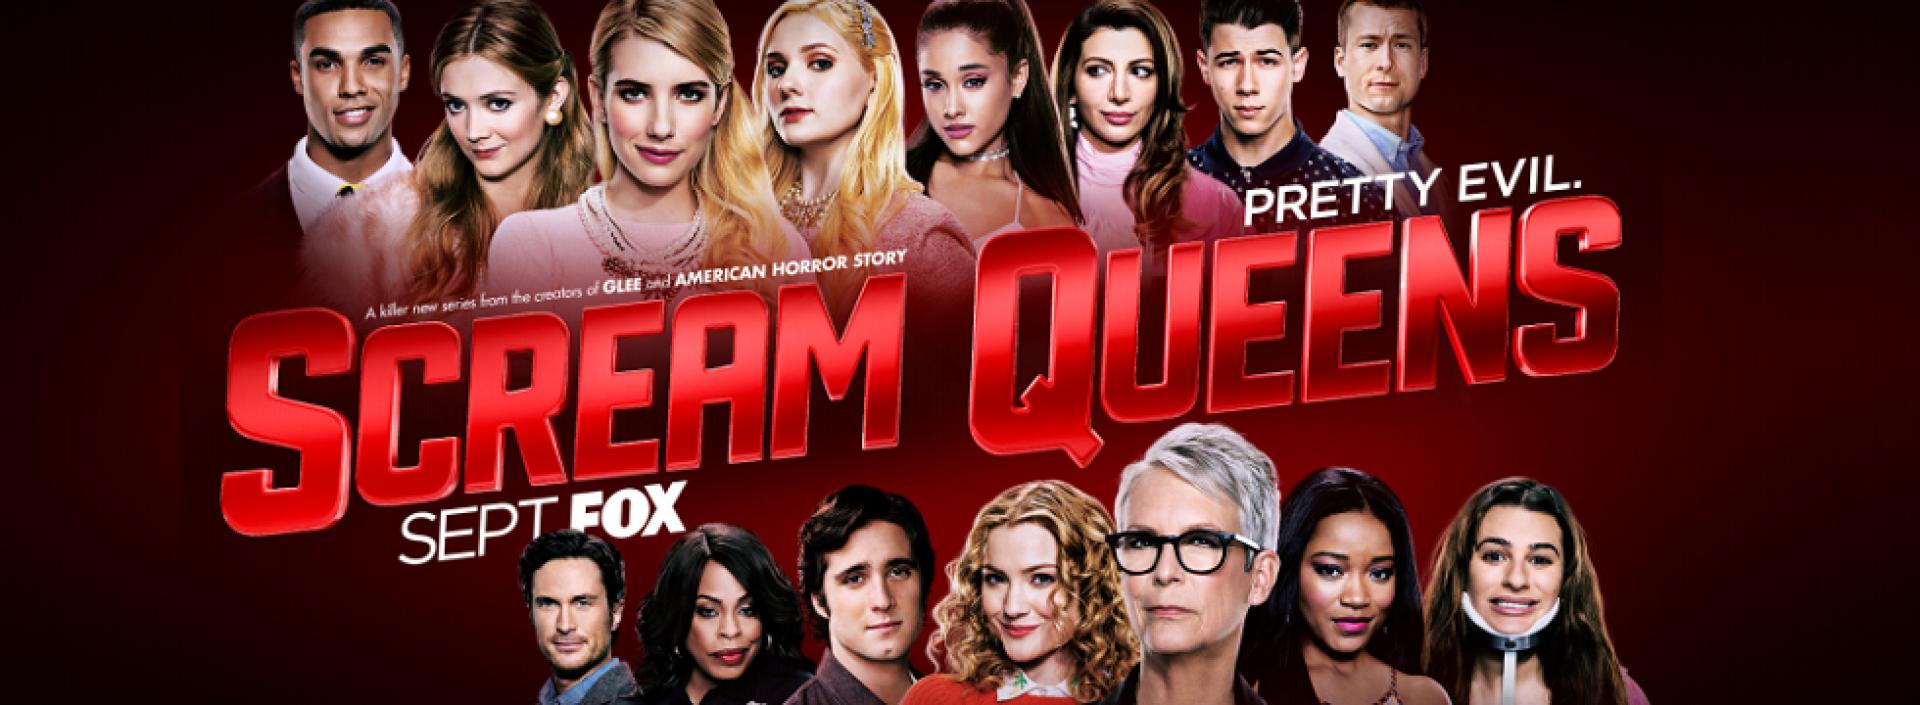 Scream Queens 1x04